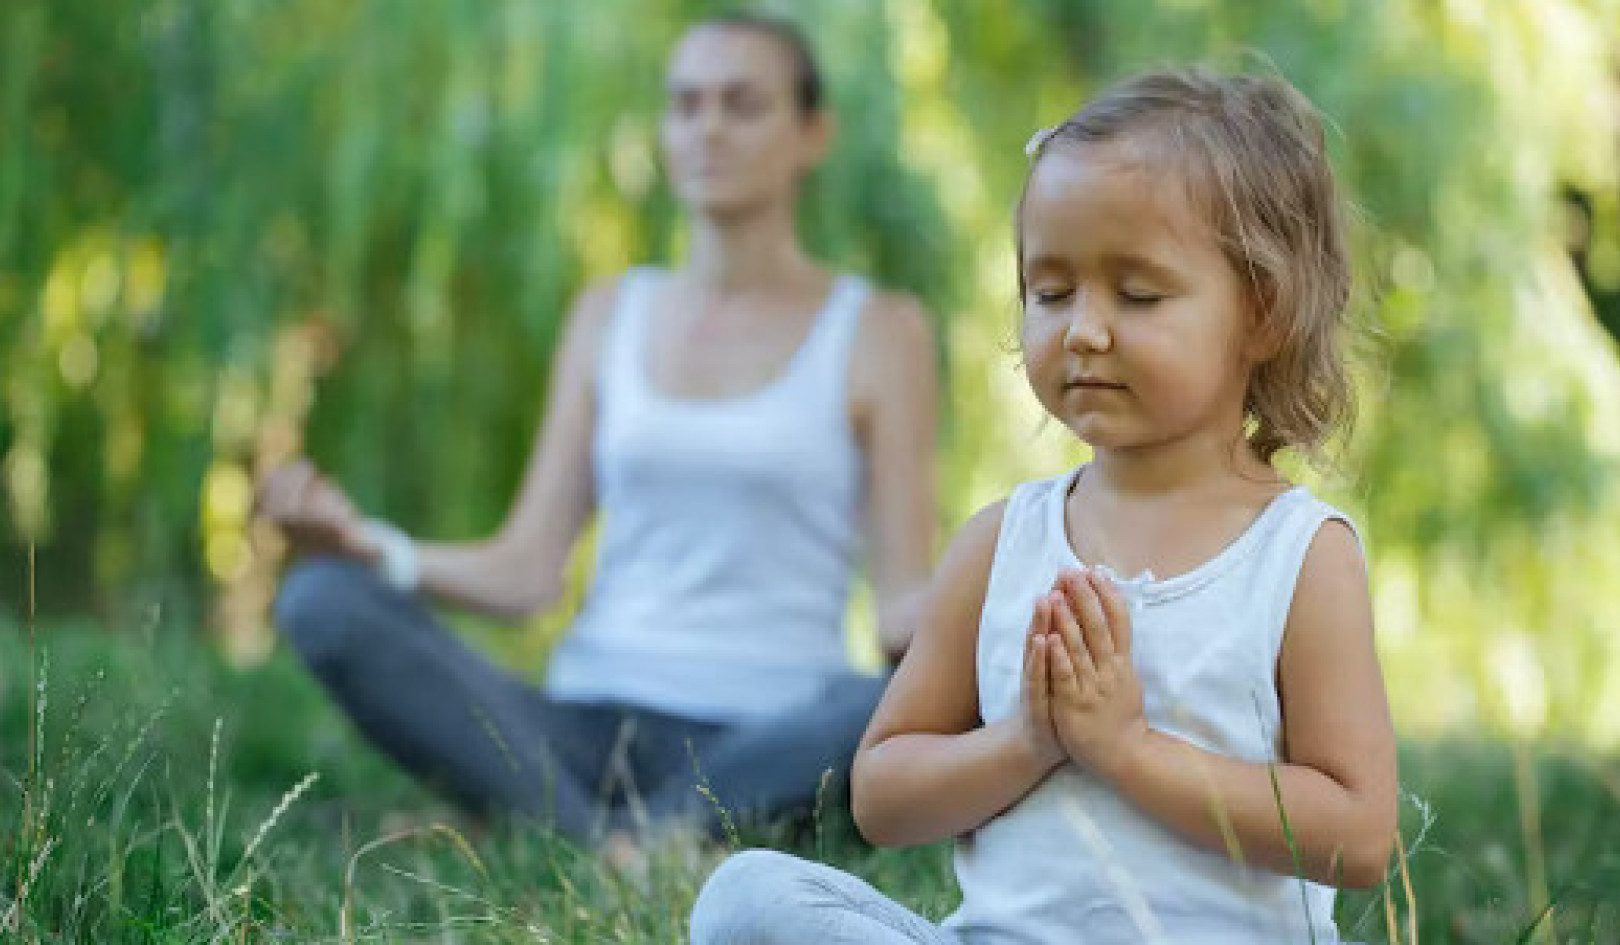 冥想有可能治療遭受創傷、診斷困難或壓力的兒童